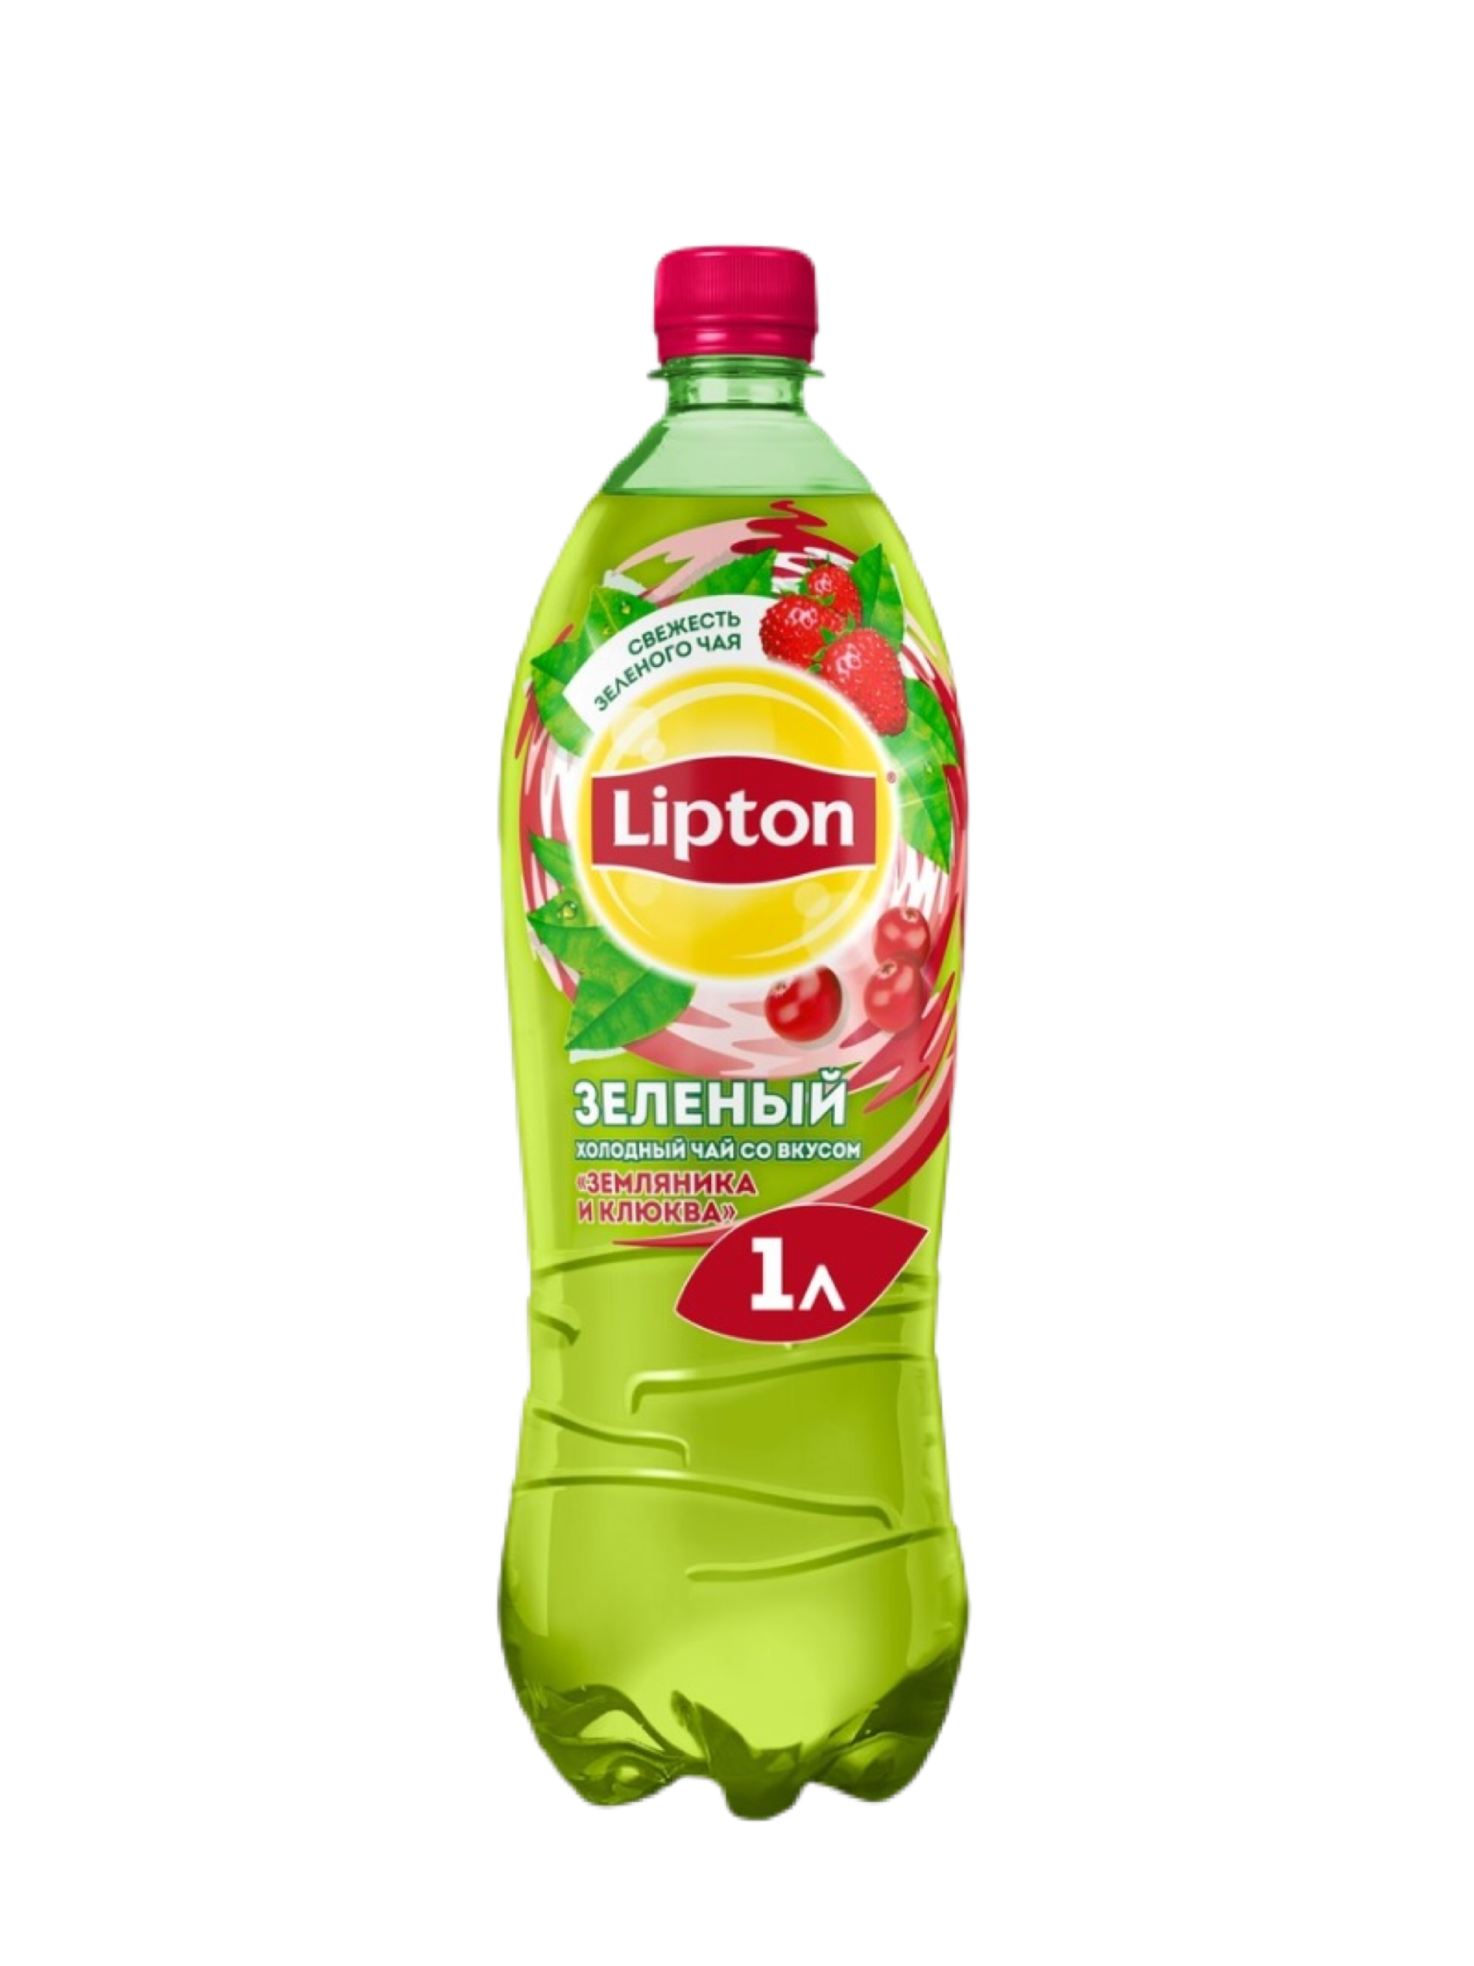 Зеленые холодной водой. Чай Липтон 0.5 малина. Липтон зеленый с земляникой. Липтон зелёный чай в бутылке 05. Липтон 0,5 и 1 л.